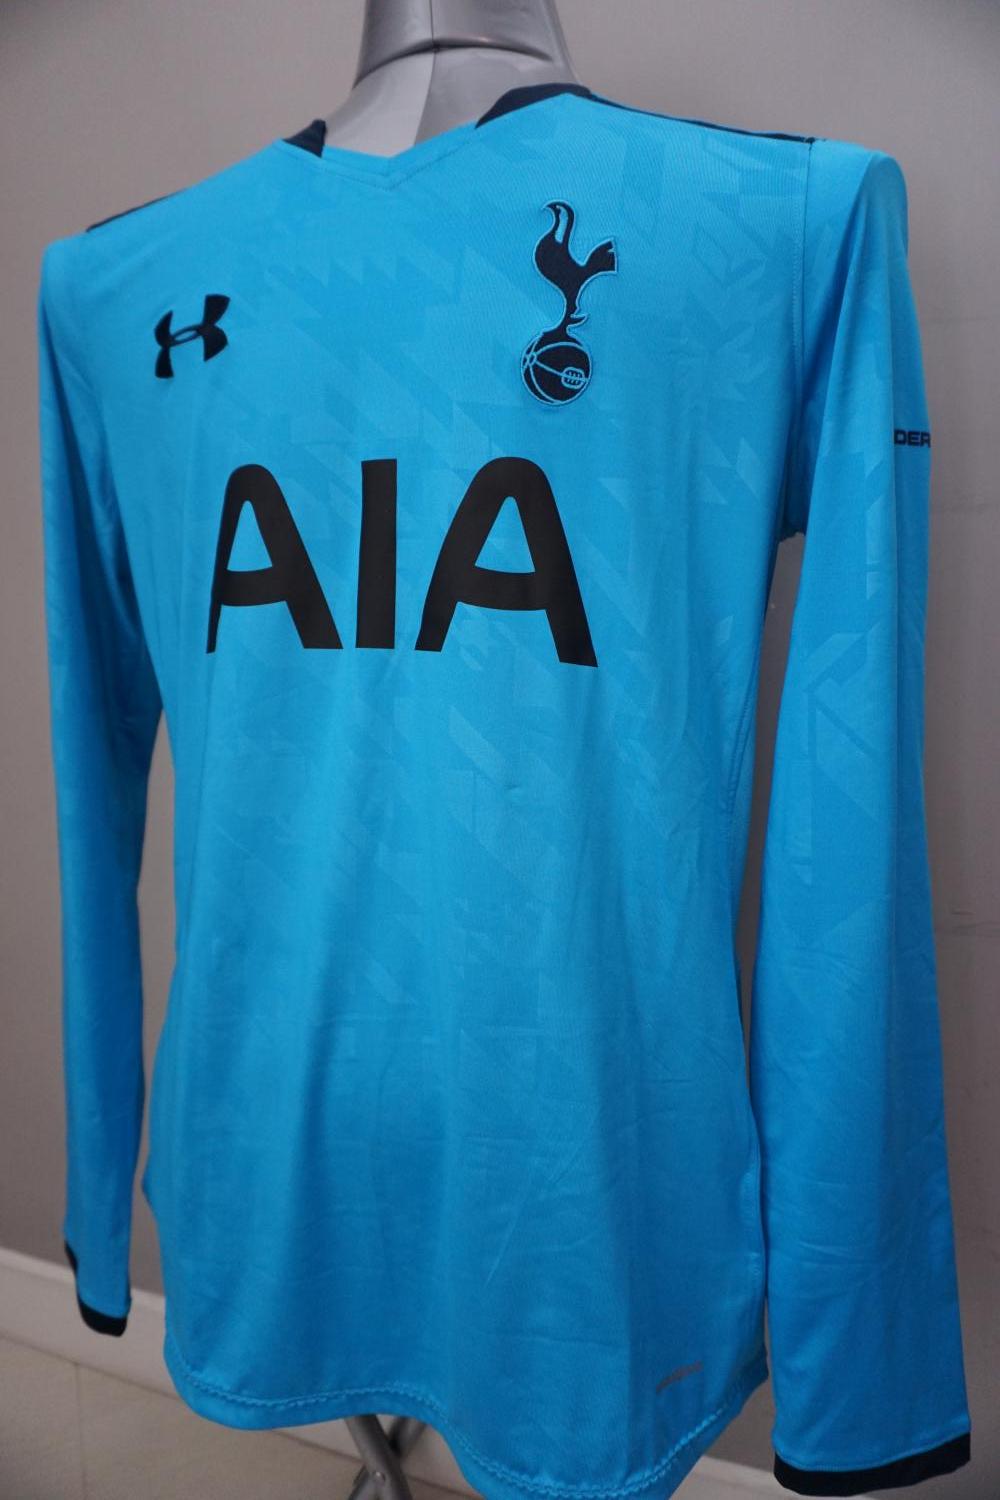 Tottenham Hotspur Cup Shirt football shirt 2013 - 2014. Sponsored